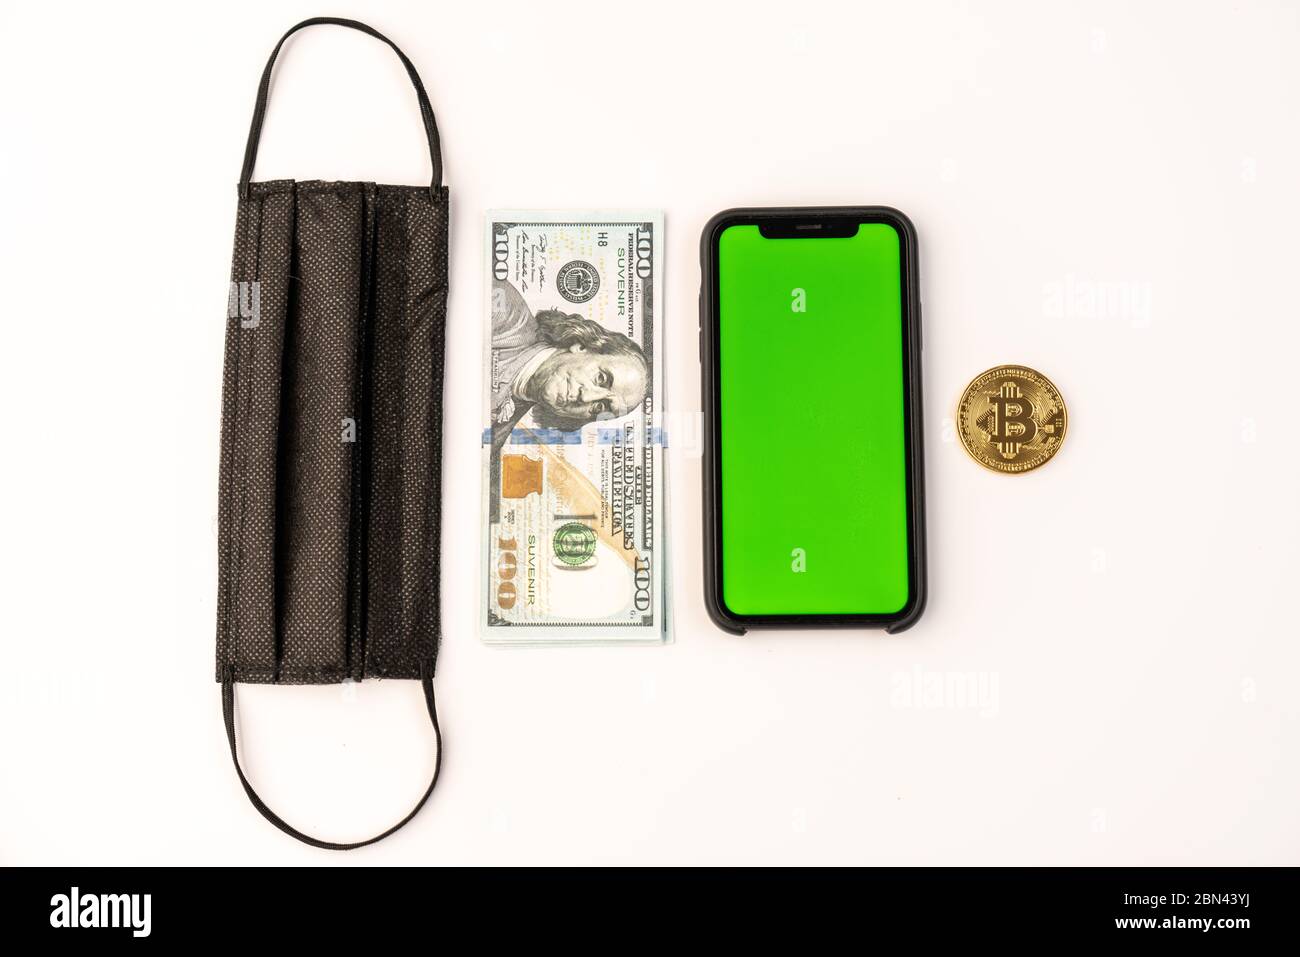 Vista dall'alto di una maschera protettiva nera, di una bolletta del dollaro, di un telefono con schermo verde e di una moneta dorata di bitcoin isolata su bianco Foto Stock